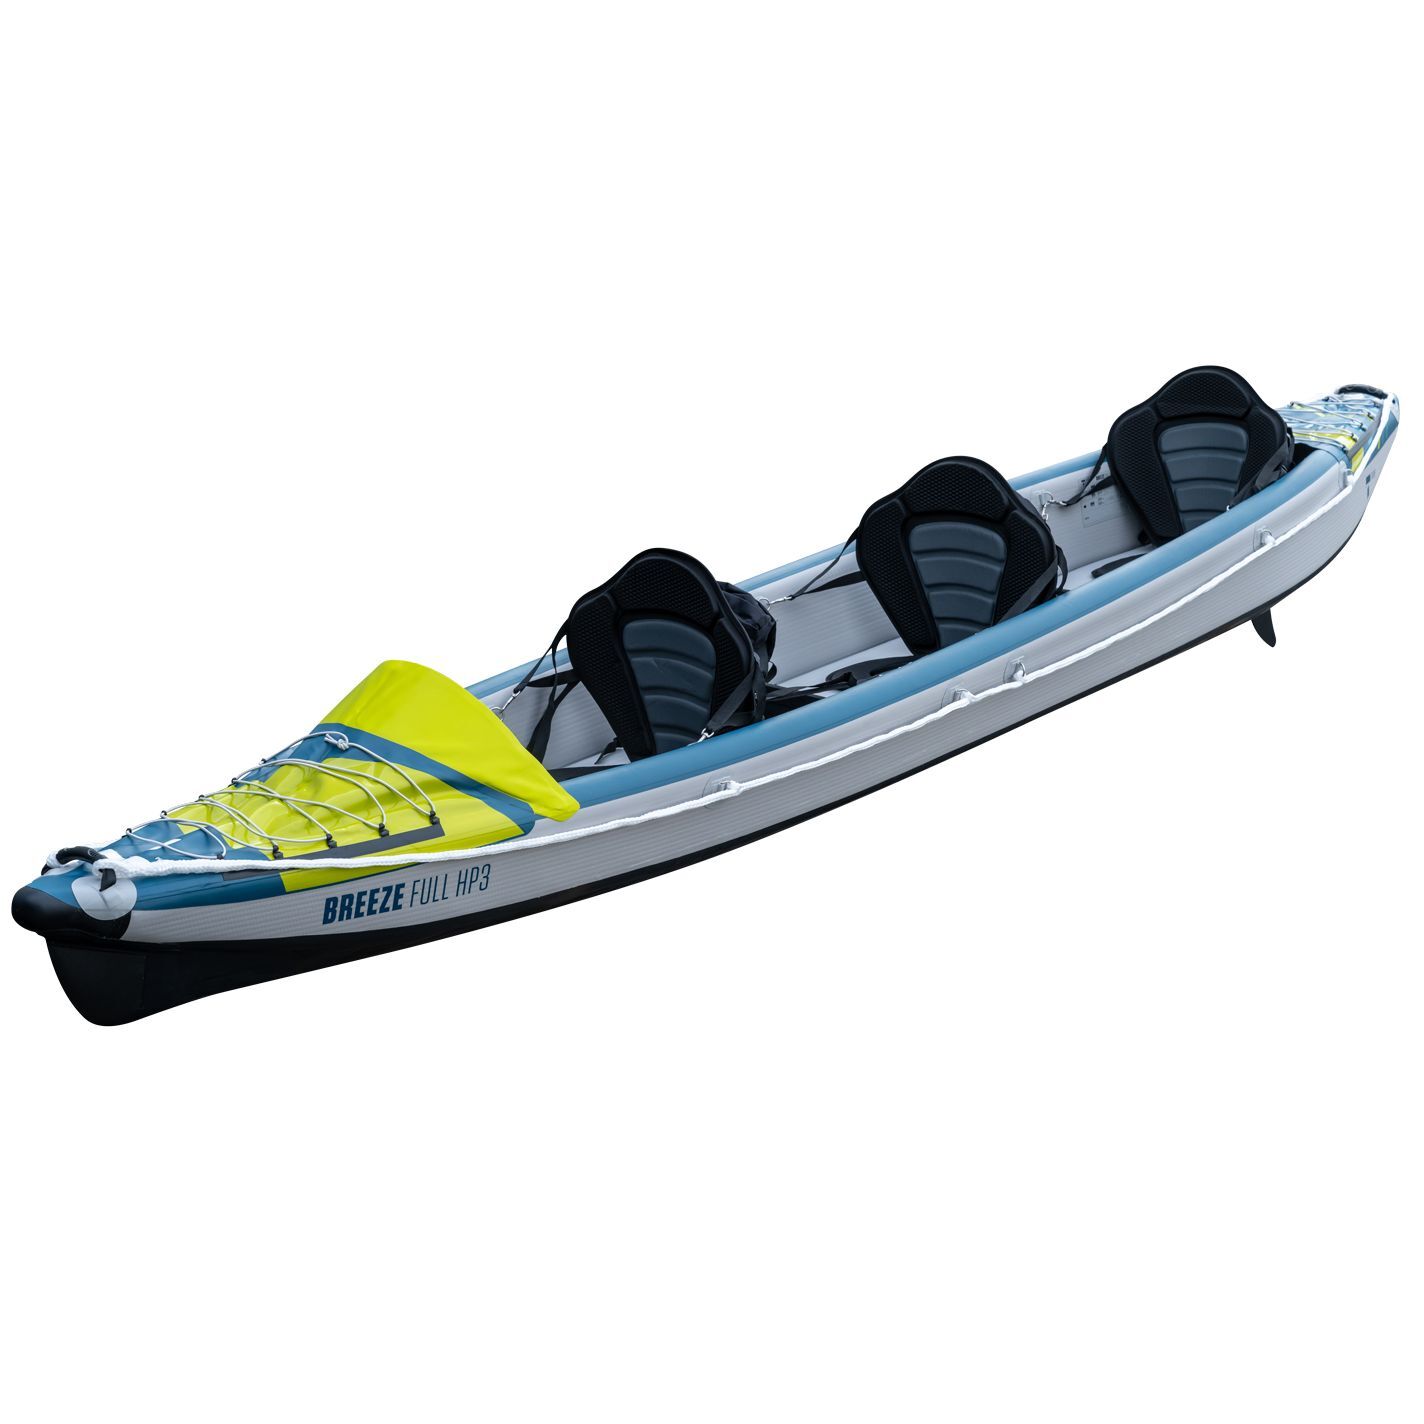 Tahe Outdoor Kayak Air Breeze Full Hp3 - Kayak hinchable